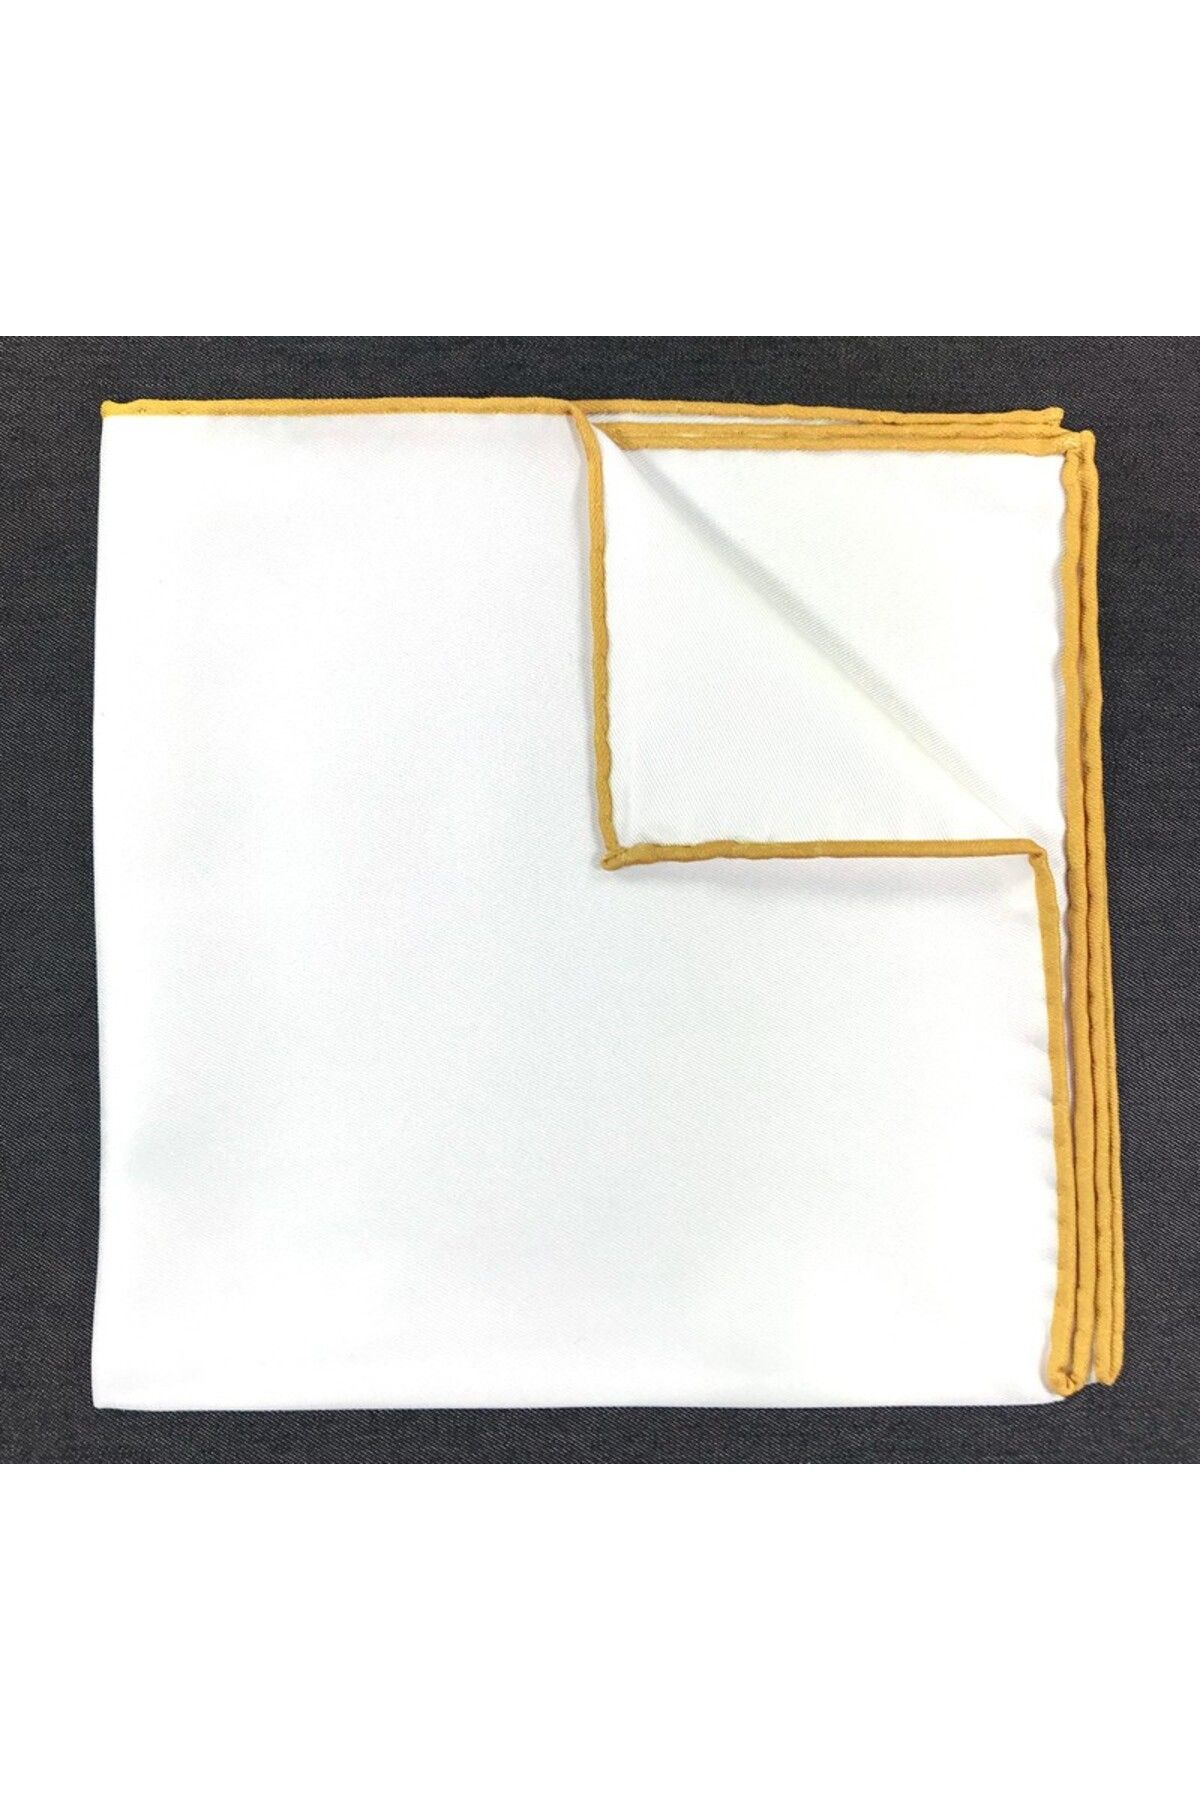 Sade Kravat Hardal Sarı Kenarlı Düz Beyaz Mendil M1283 Hardal